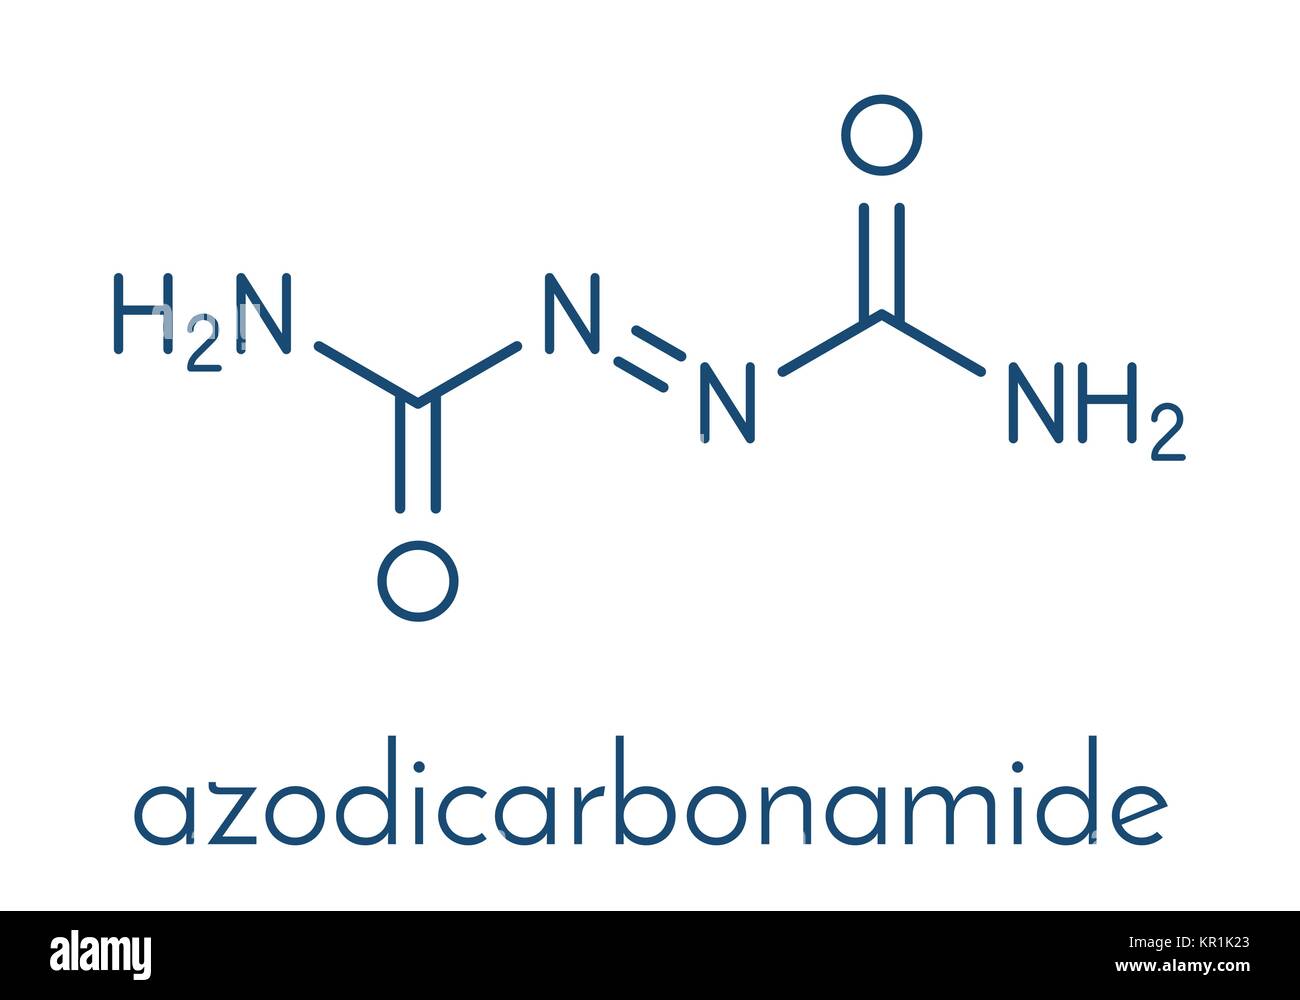 Azodicarbonammide additivo alimentare molecola. Utilizzato nella produzione di pane di farina come agenti di miglioramento e come agente espandente nella produzione di schiuma di materia plastica. Sk Illustrazione Vettoriale